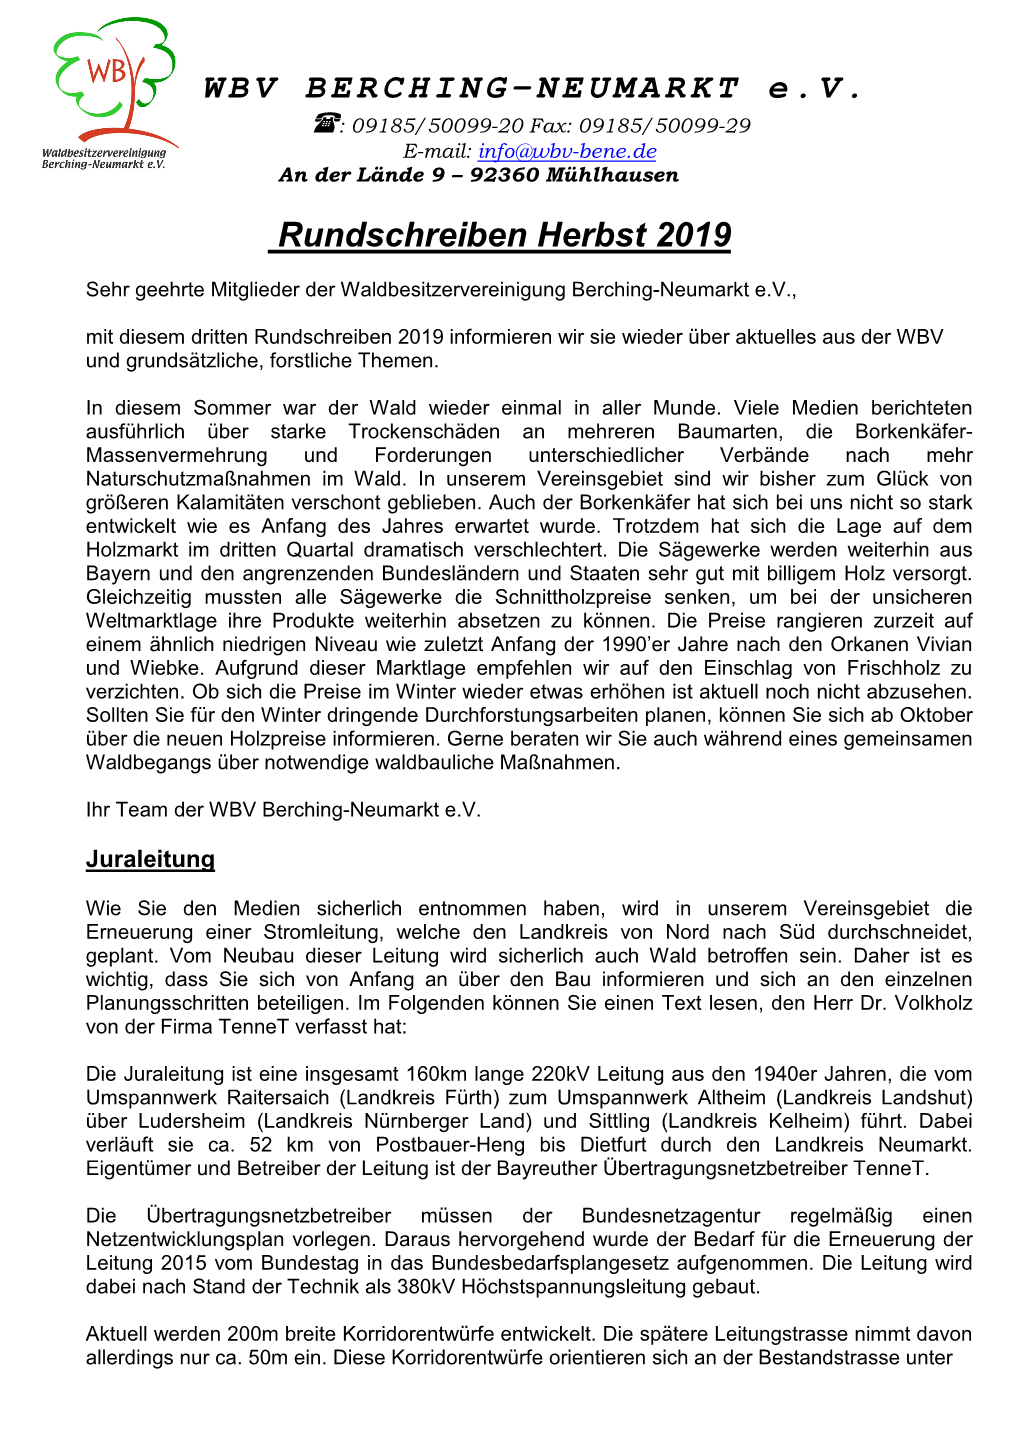 WBV BERCHING-NEUMARKT E.V. Rundschreiben Herbst 2019